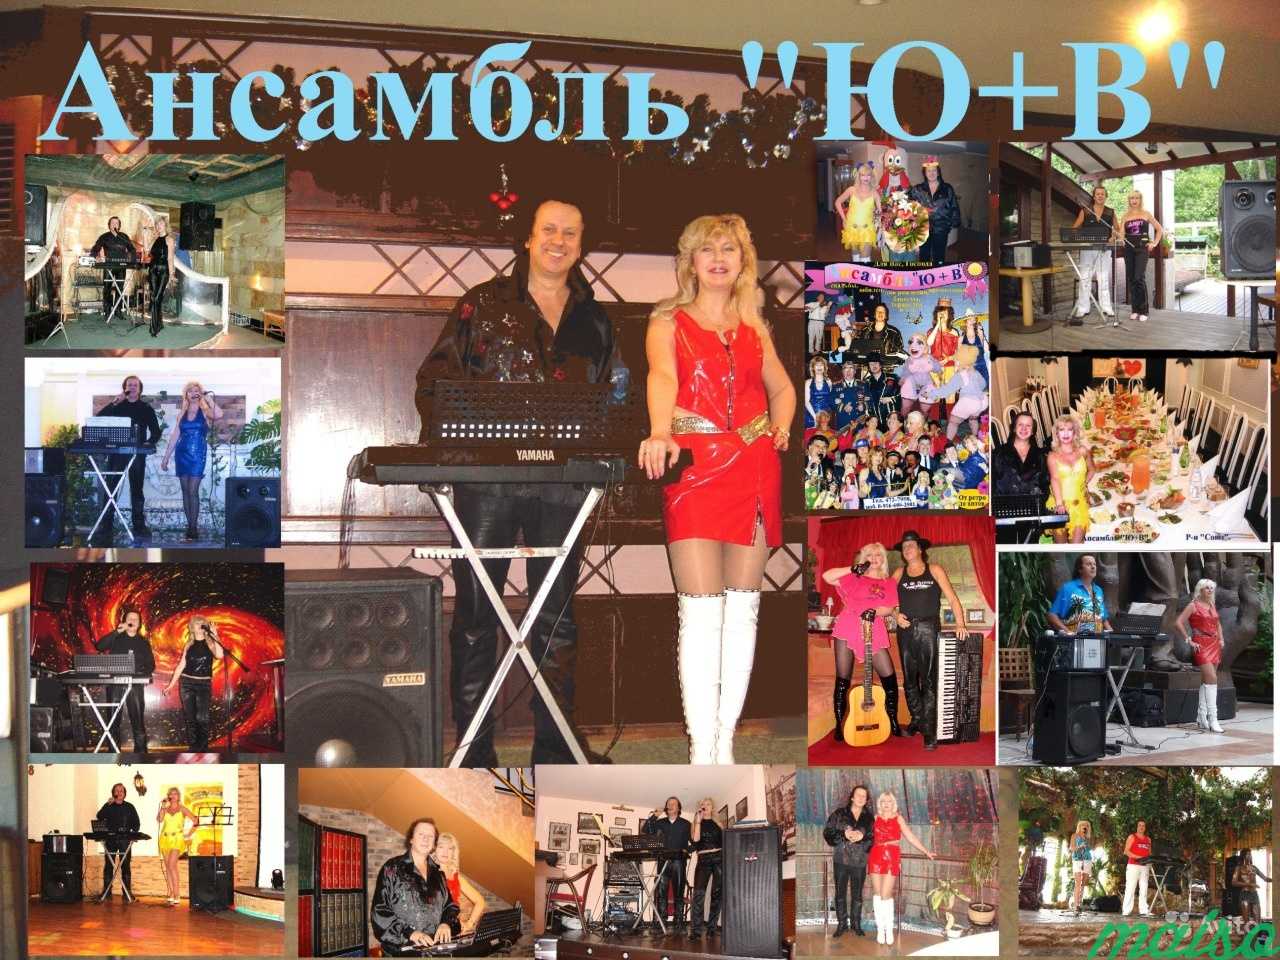 Музыканты на банкет, юбилей, корпоратив, теплоход в Москве. Фото 1